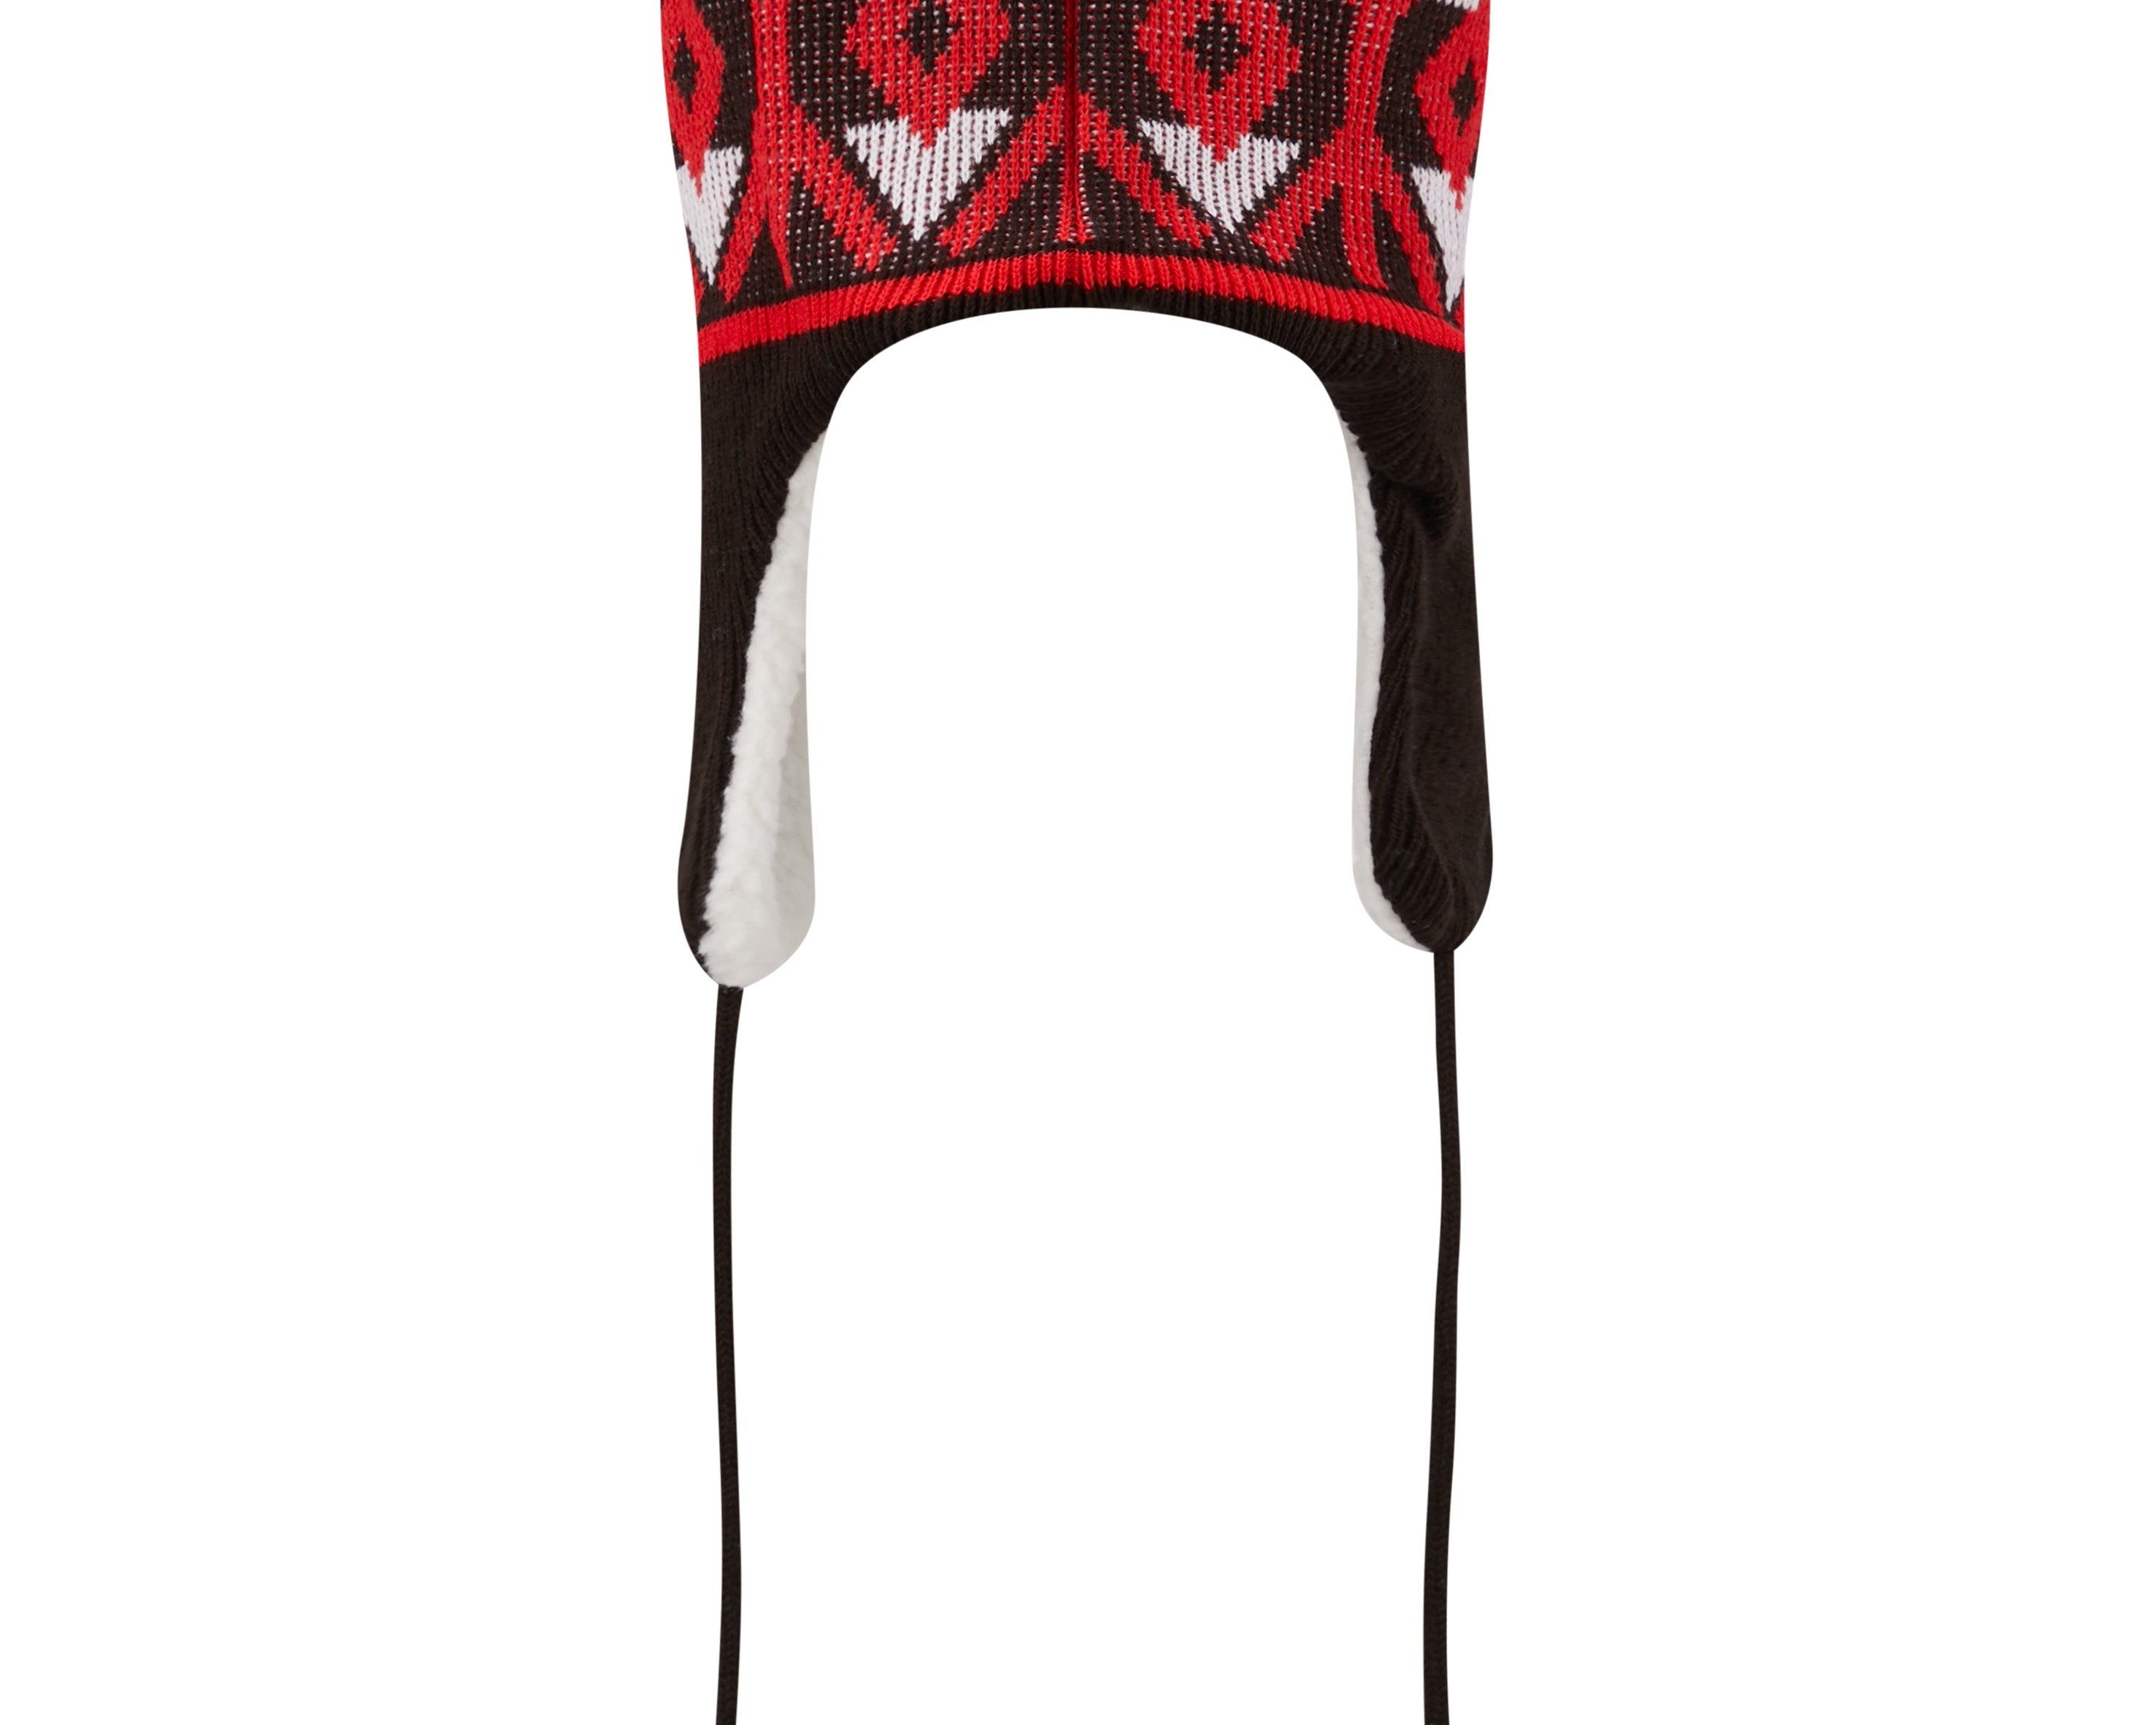 Portland Trail Blazers New Era Trapper Knit Hat